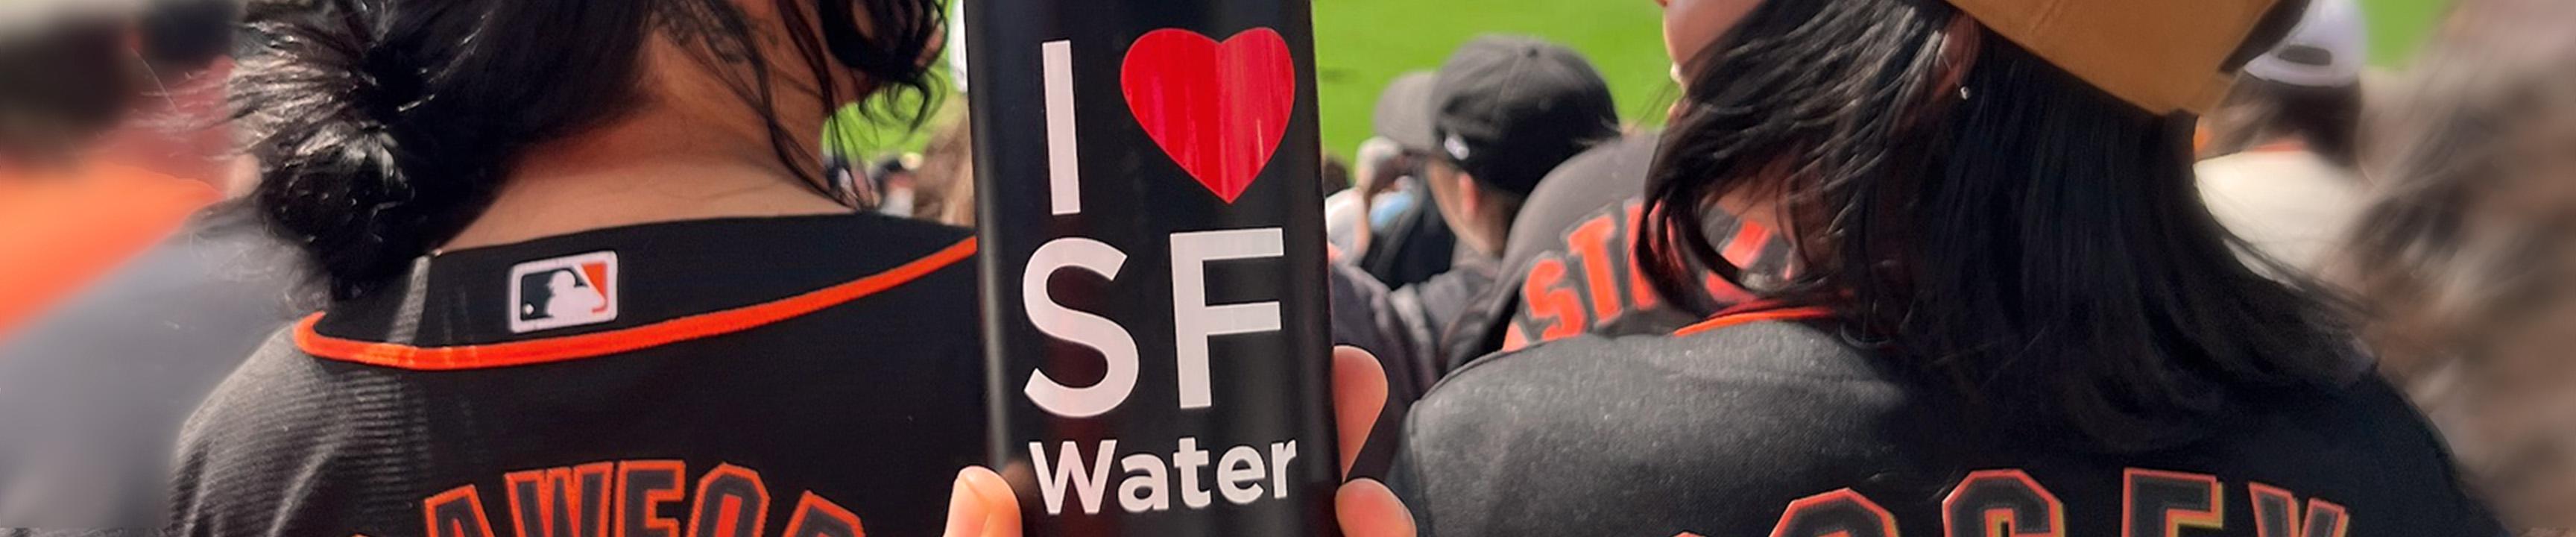 Aficionados disfrutando del partido de los Giants y una botella de agua con I heart SF Water